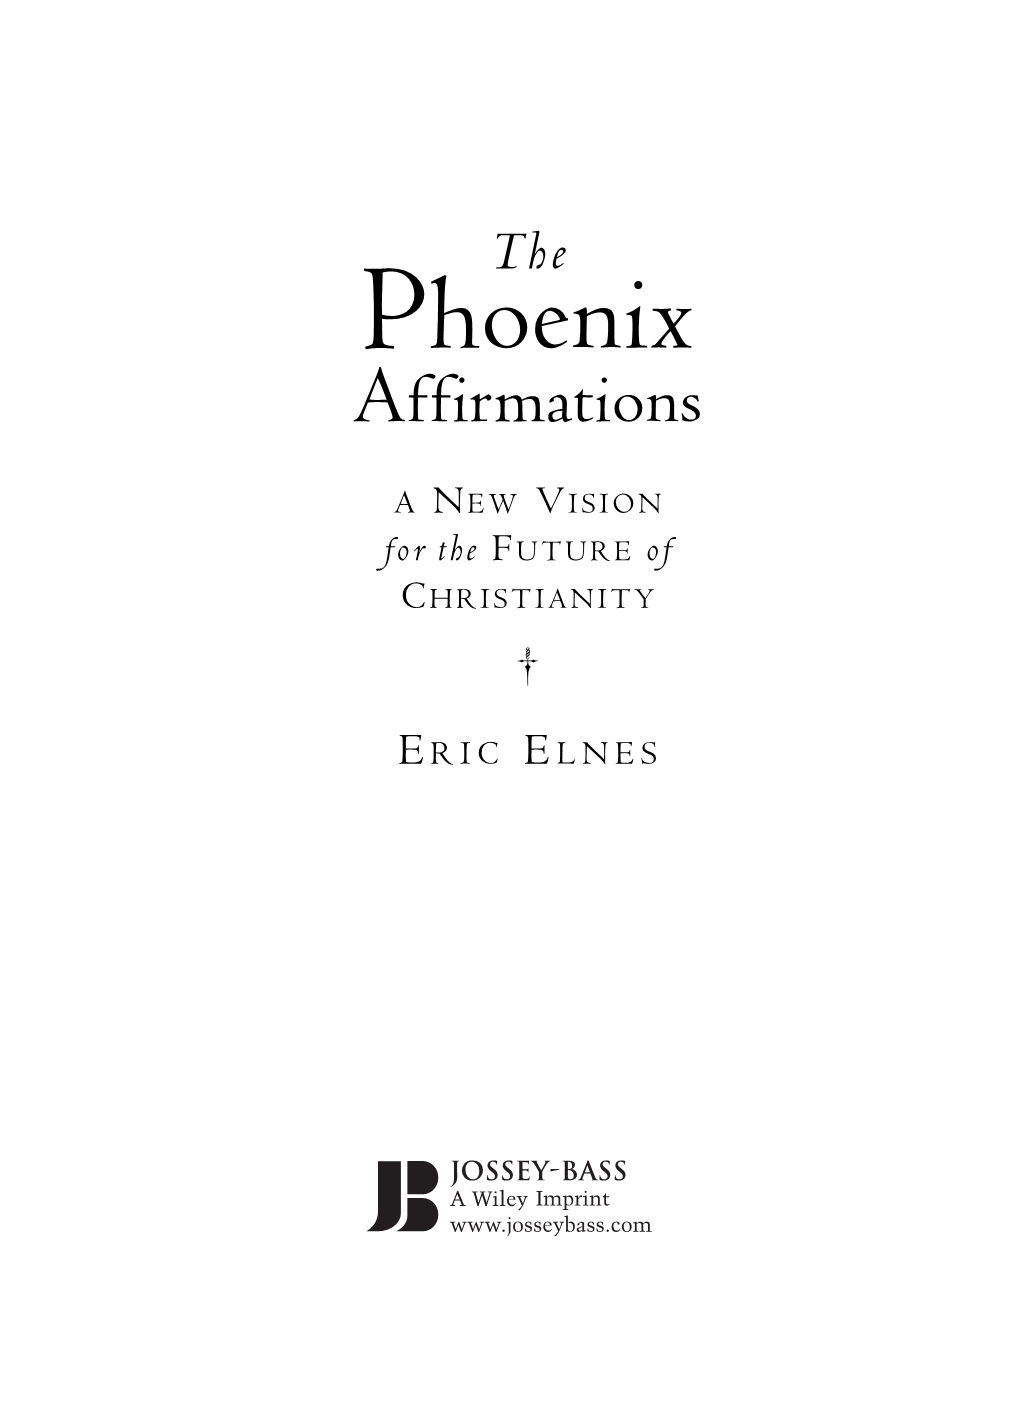 Phoenix Affirmations